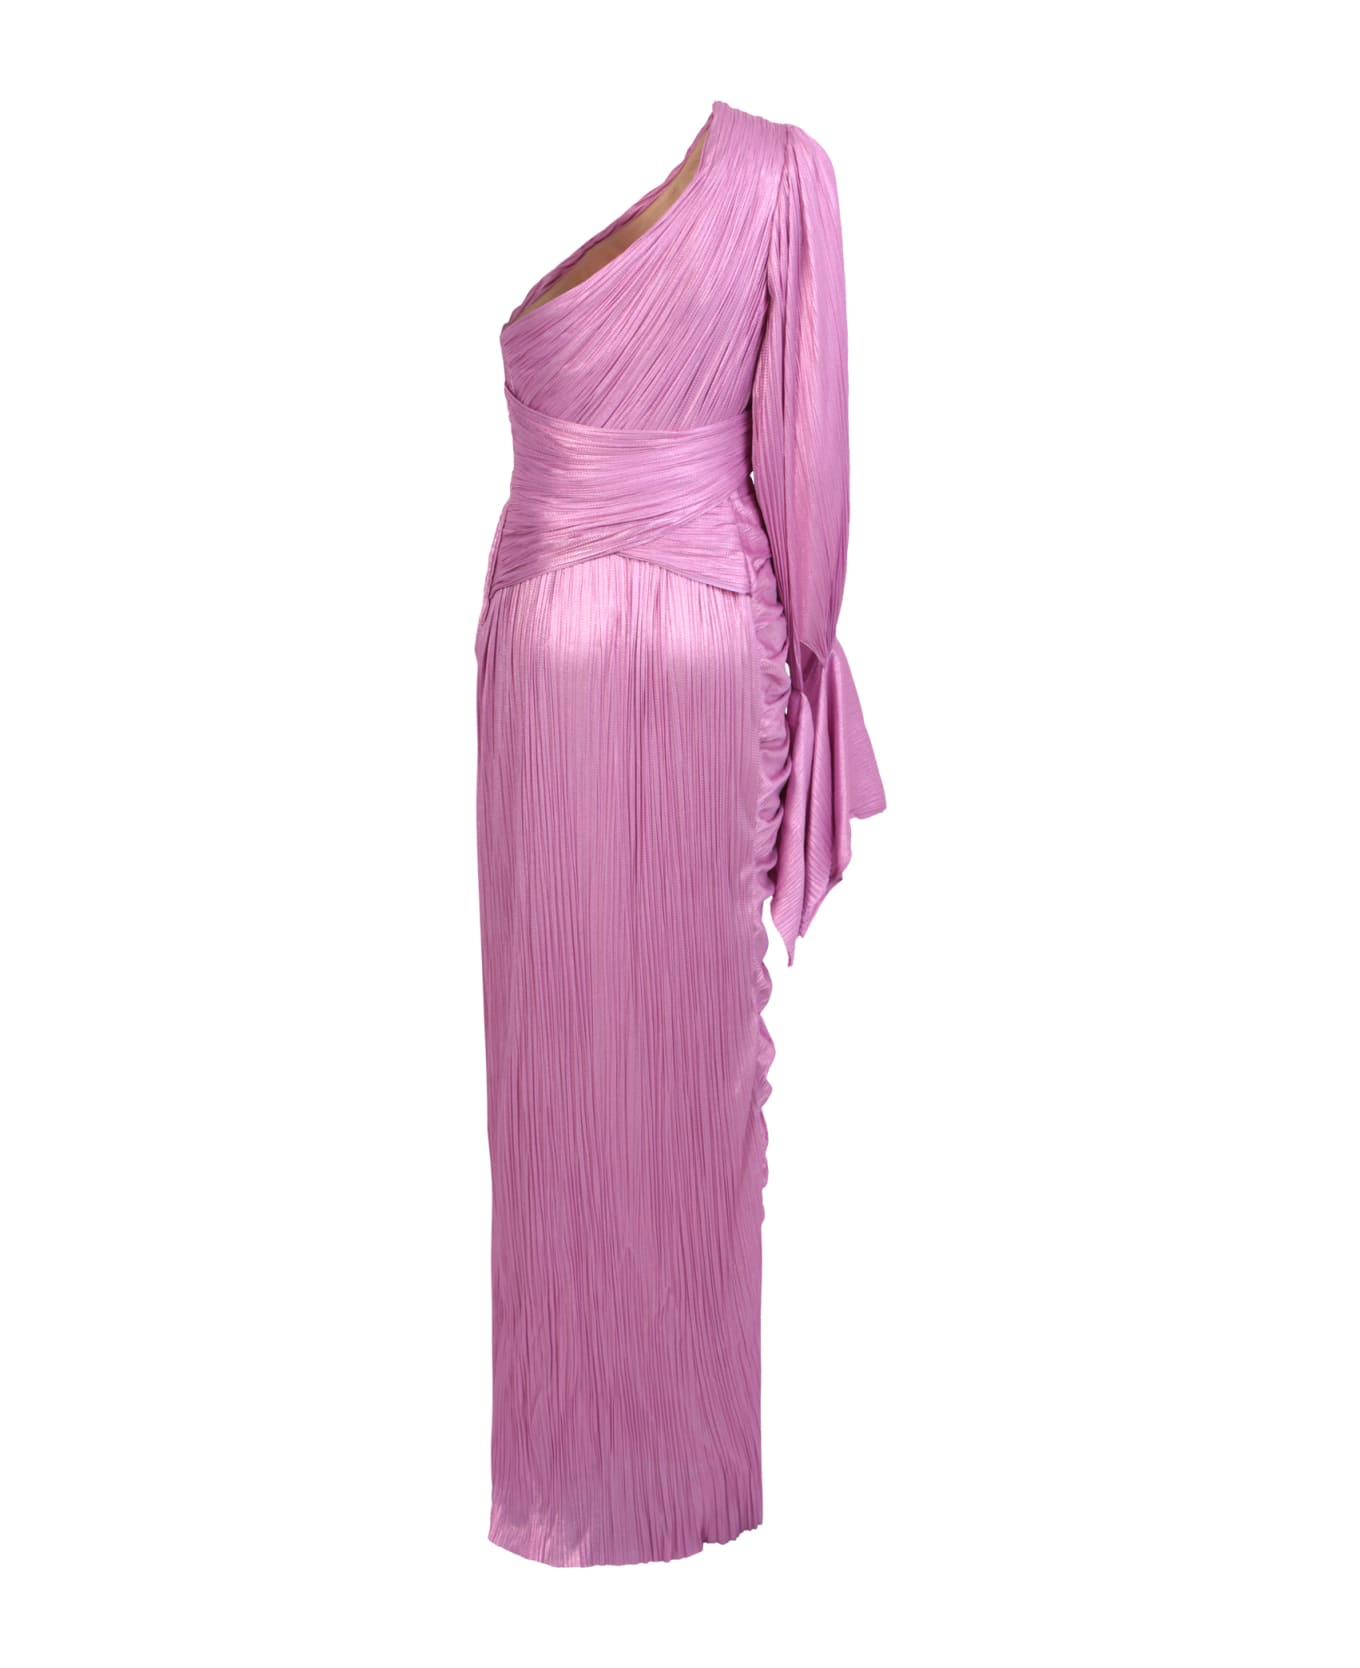 Maria Lucia Hohan Pink Palmer Dress - Pink